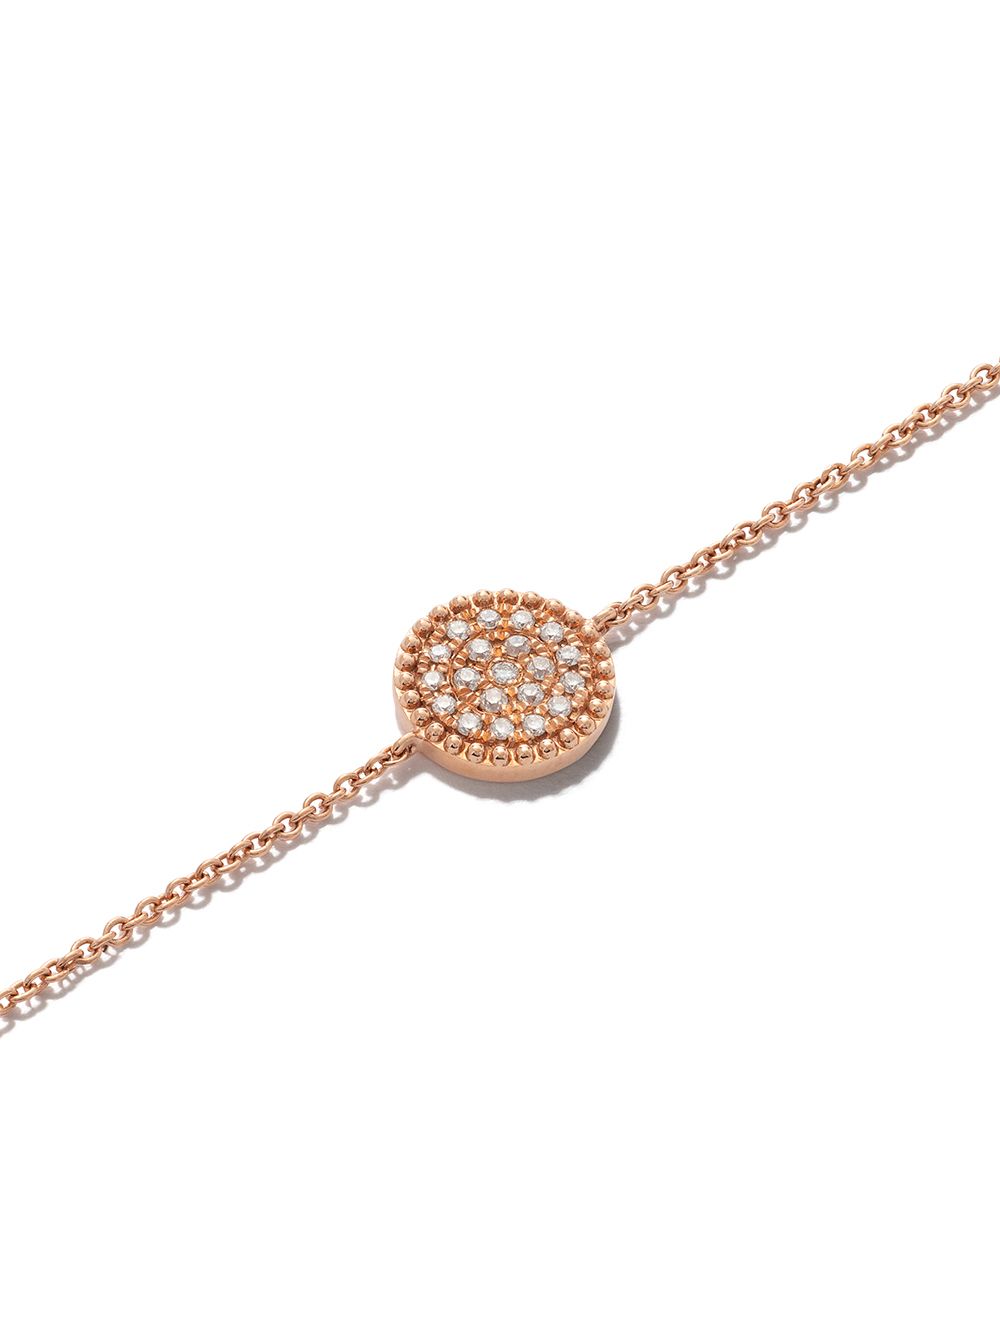 AS29 18kt Rose Gold Mye Round Beading Pave Diamond Bracelet - Farfetch